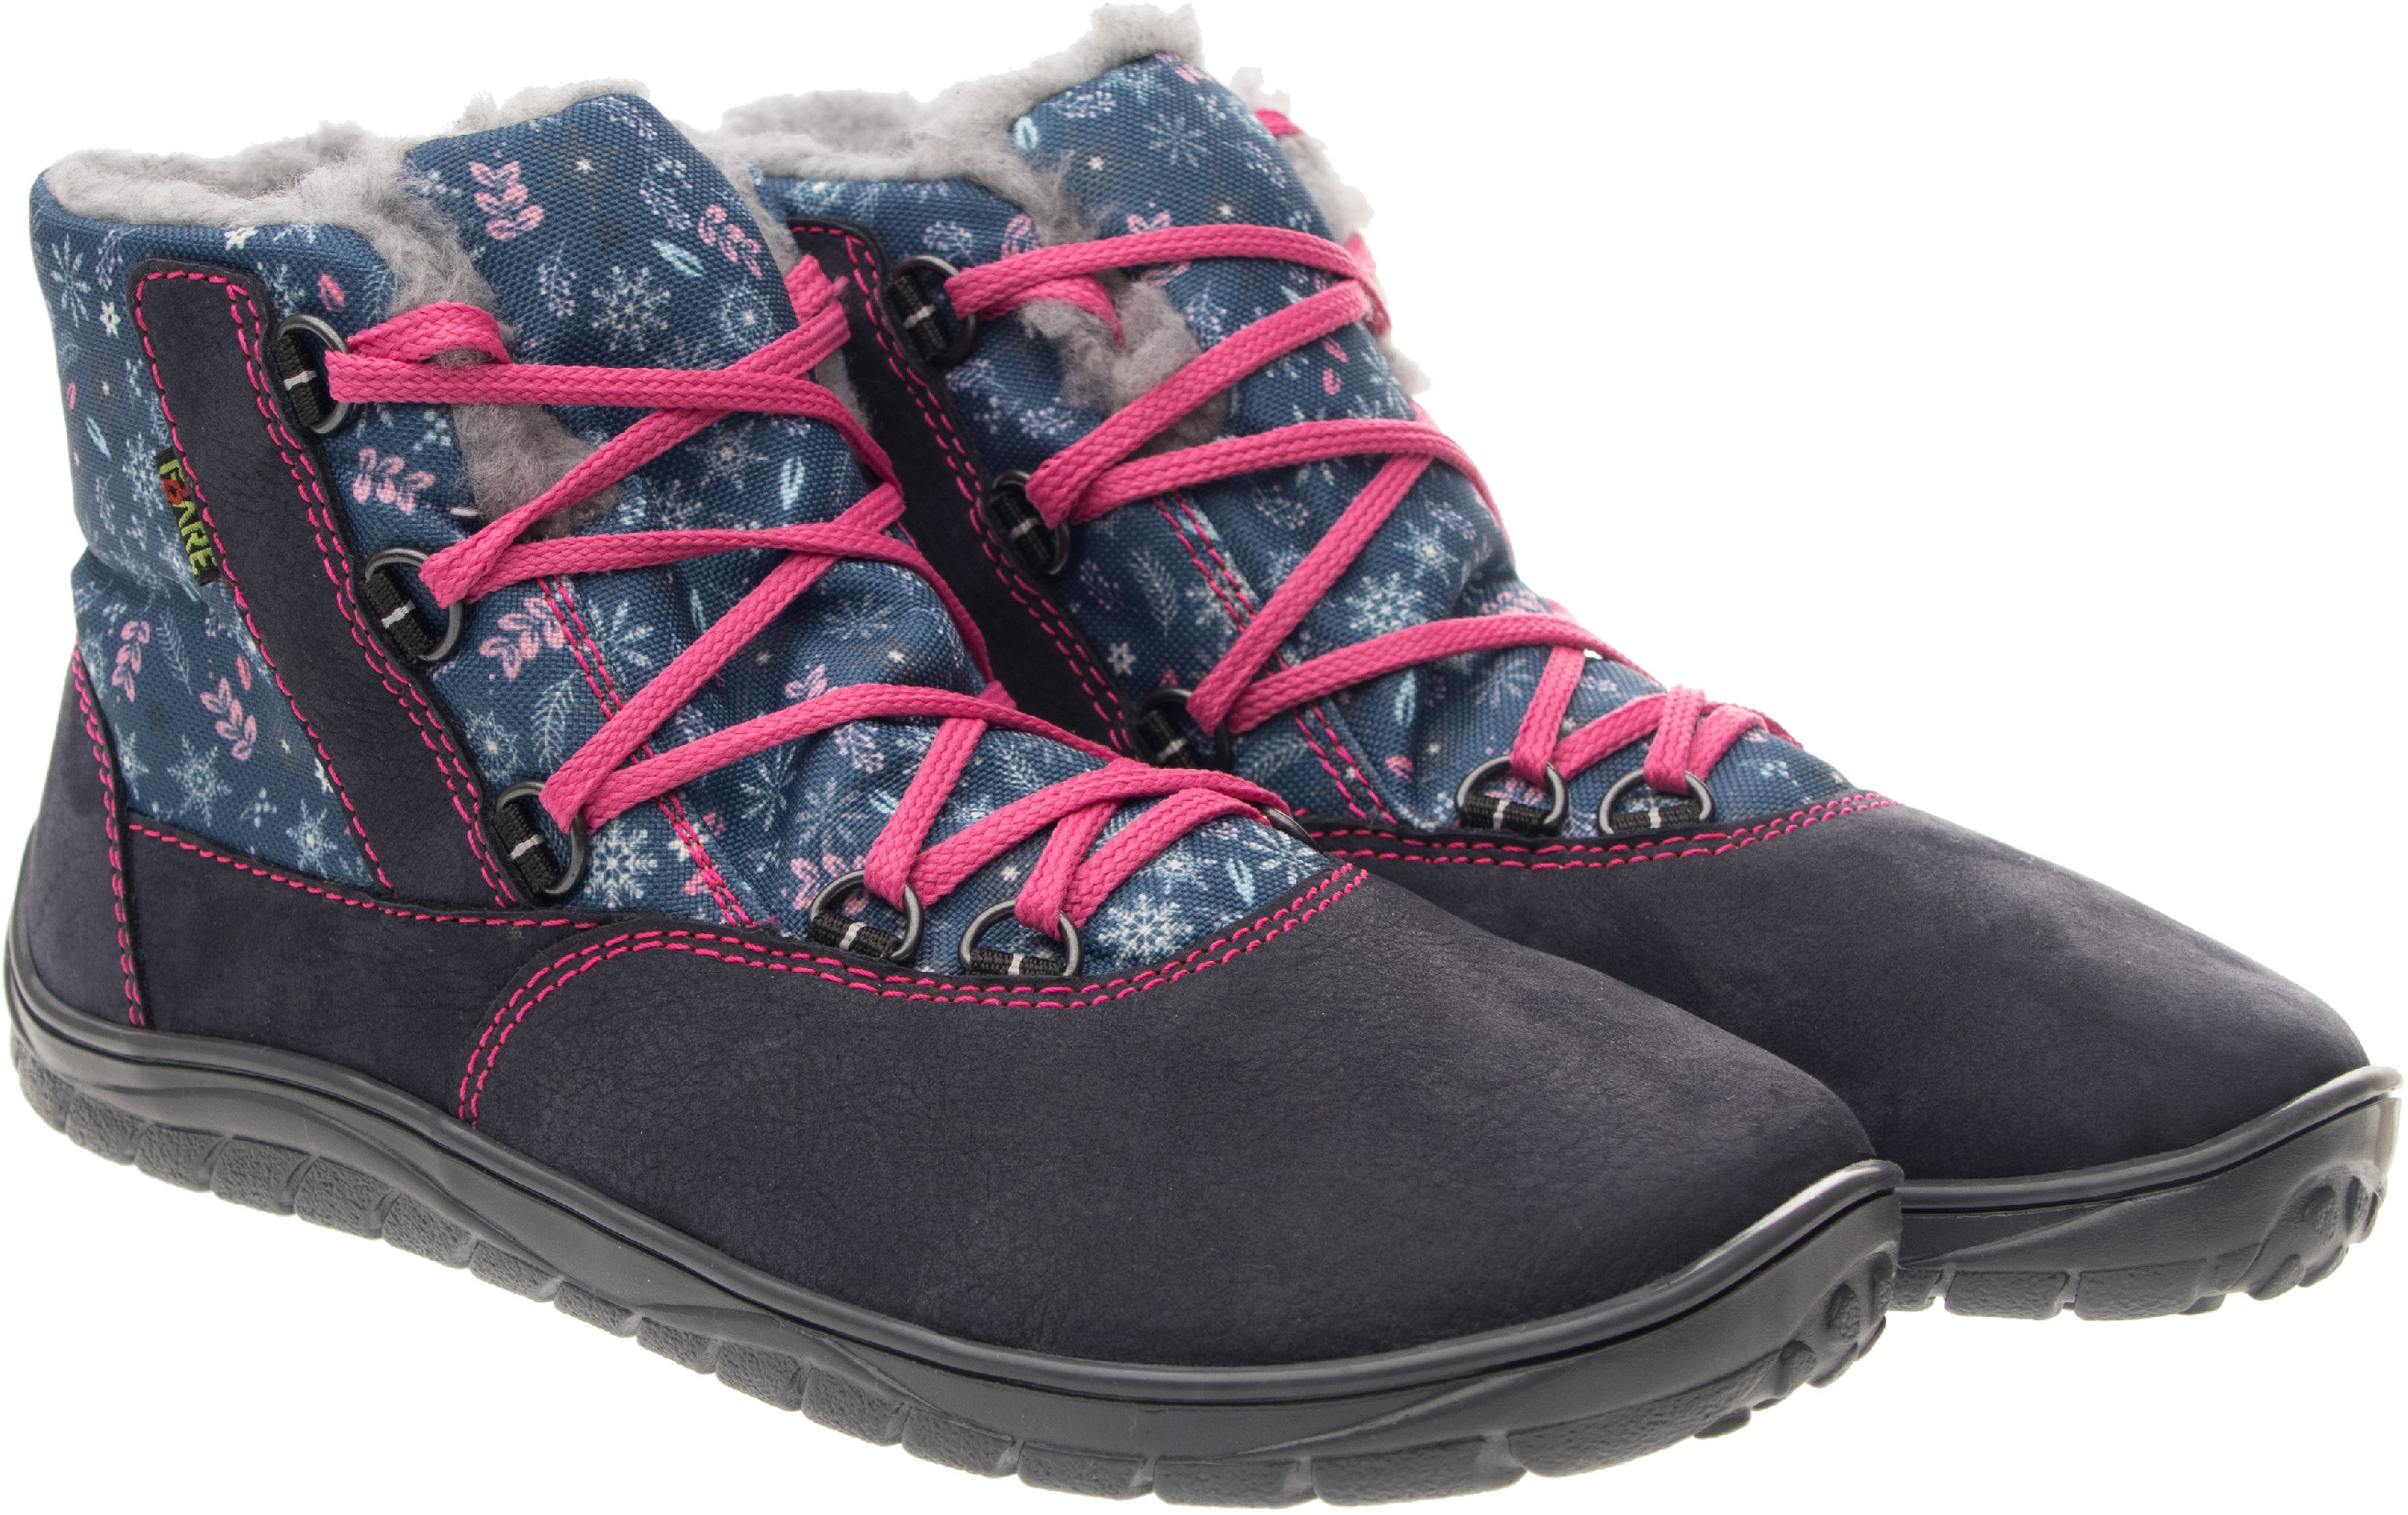 Fare Bare unisex zimní nepromokavé boty B5643201 Velikost obuvi: 33